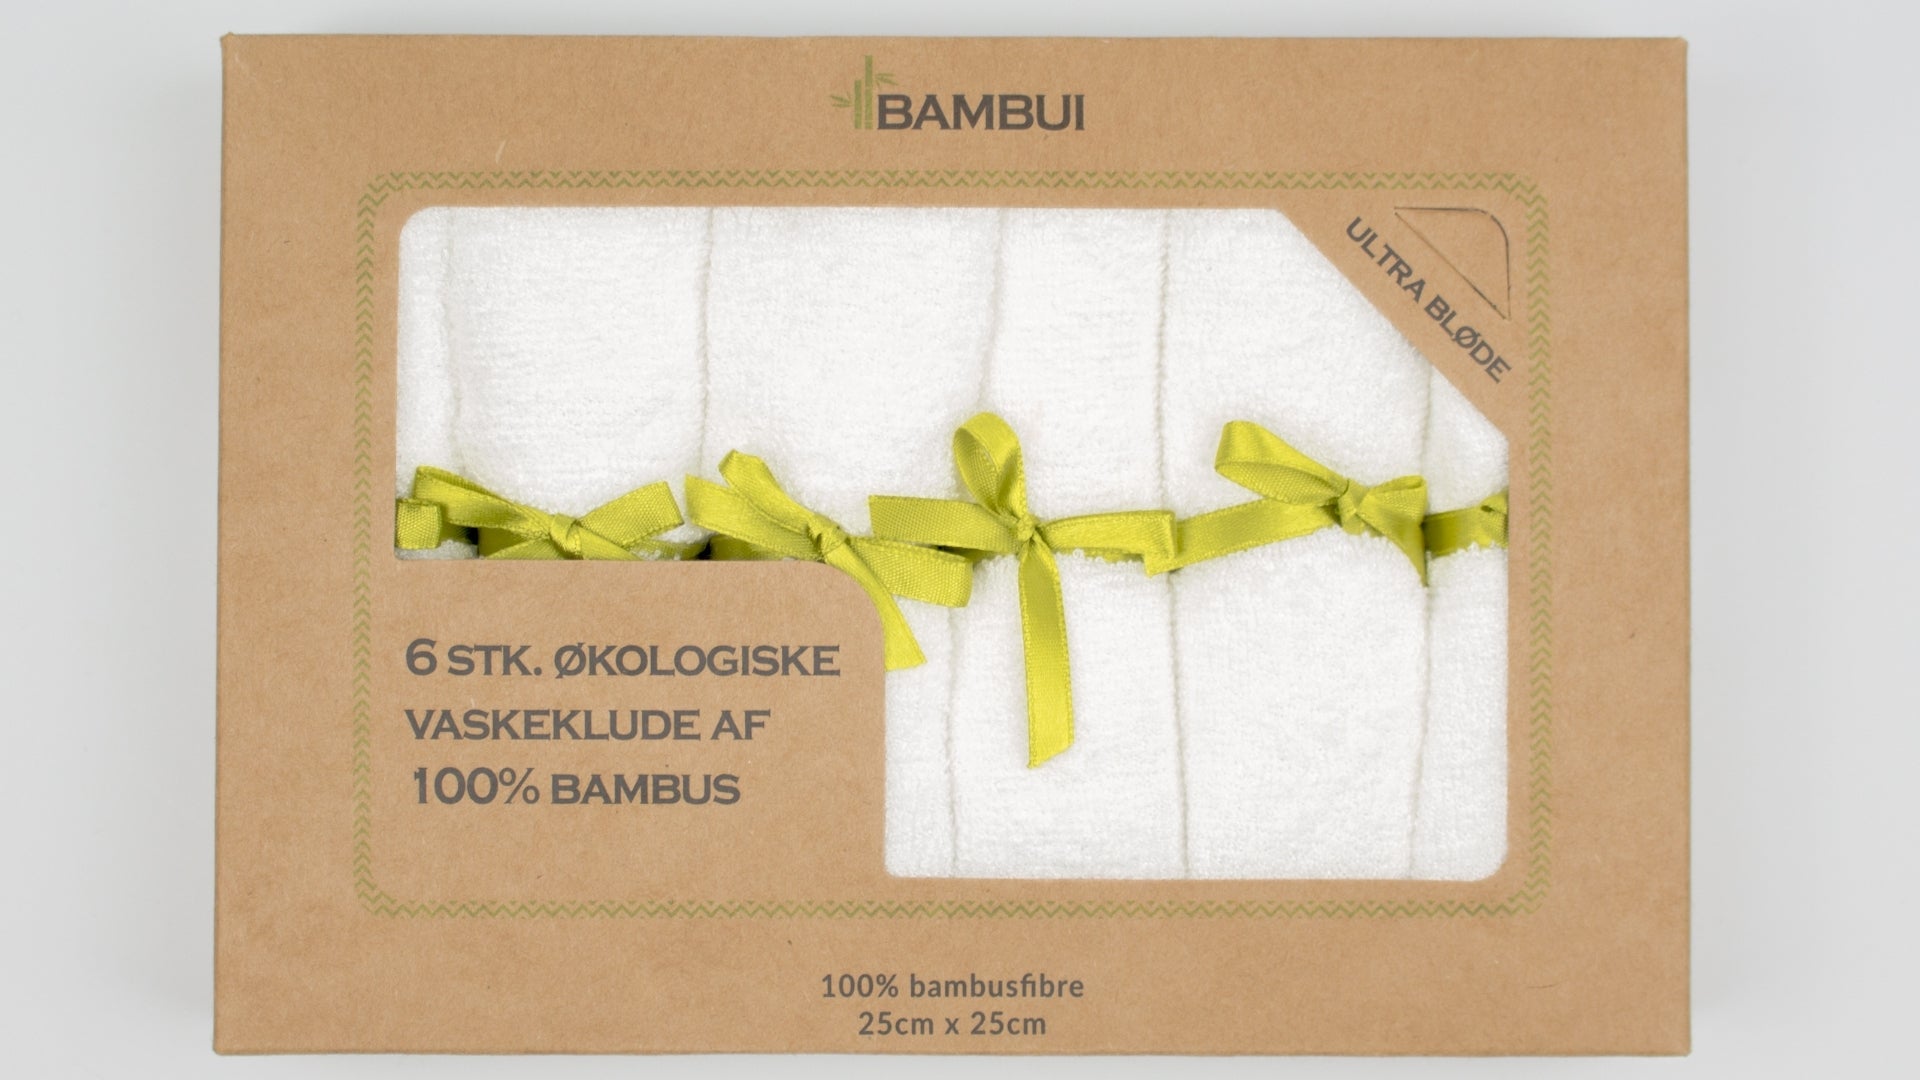 1 Sådan bruger du Bambus Vaskeklude - Bæredygtig med Bambui ✓